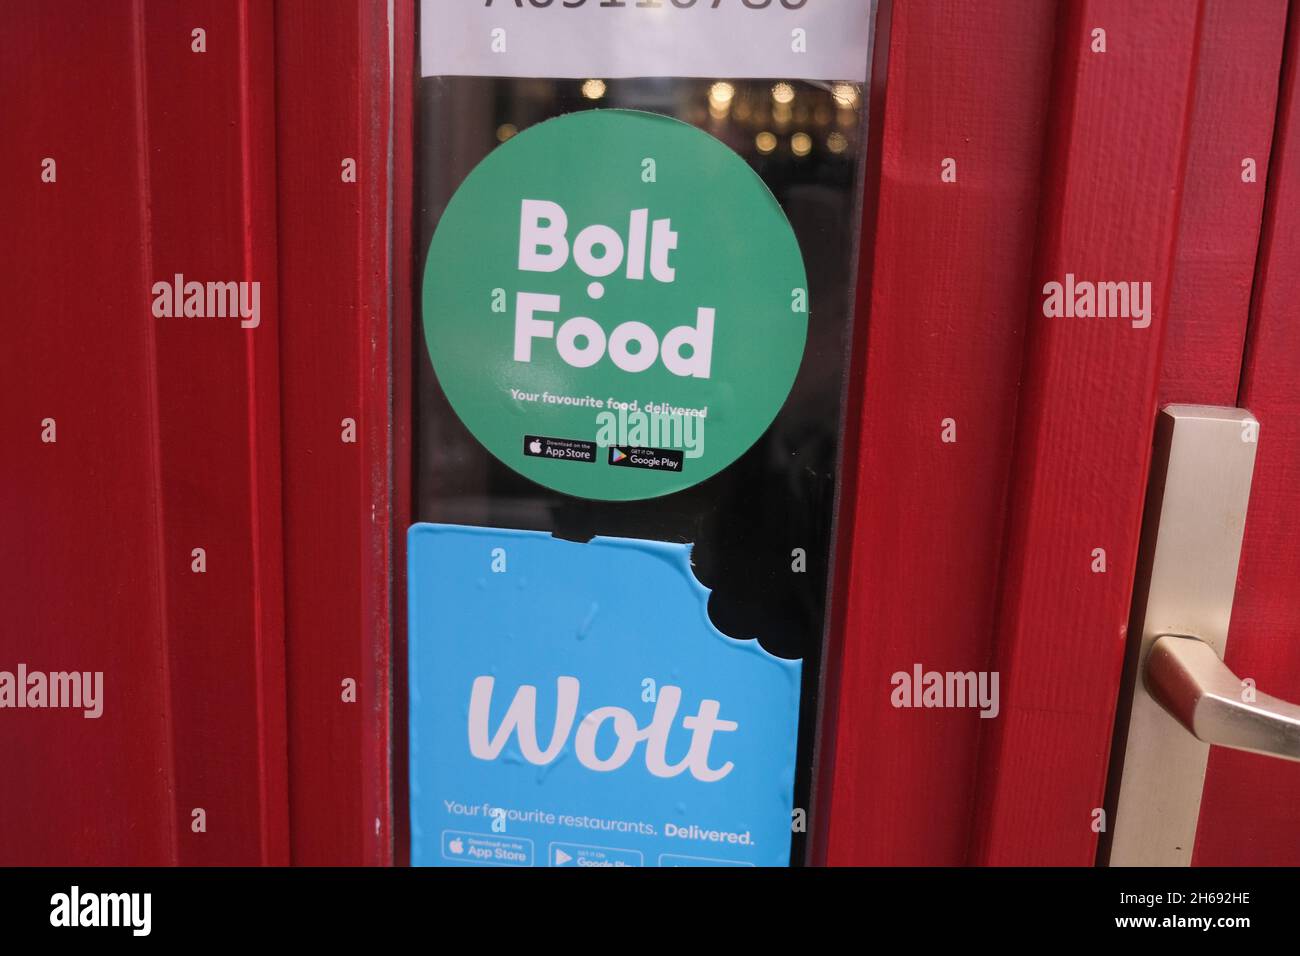 Budapest, Hungría - 1 de noviembre de 2021: Adhesivos de entrega de Bolt Food y Wolt, Editorial ilustrativa. Foto de stock